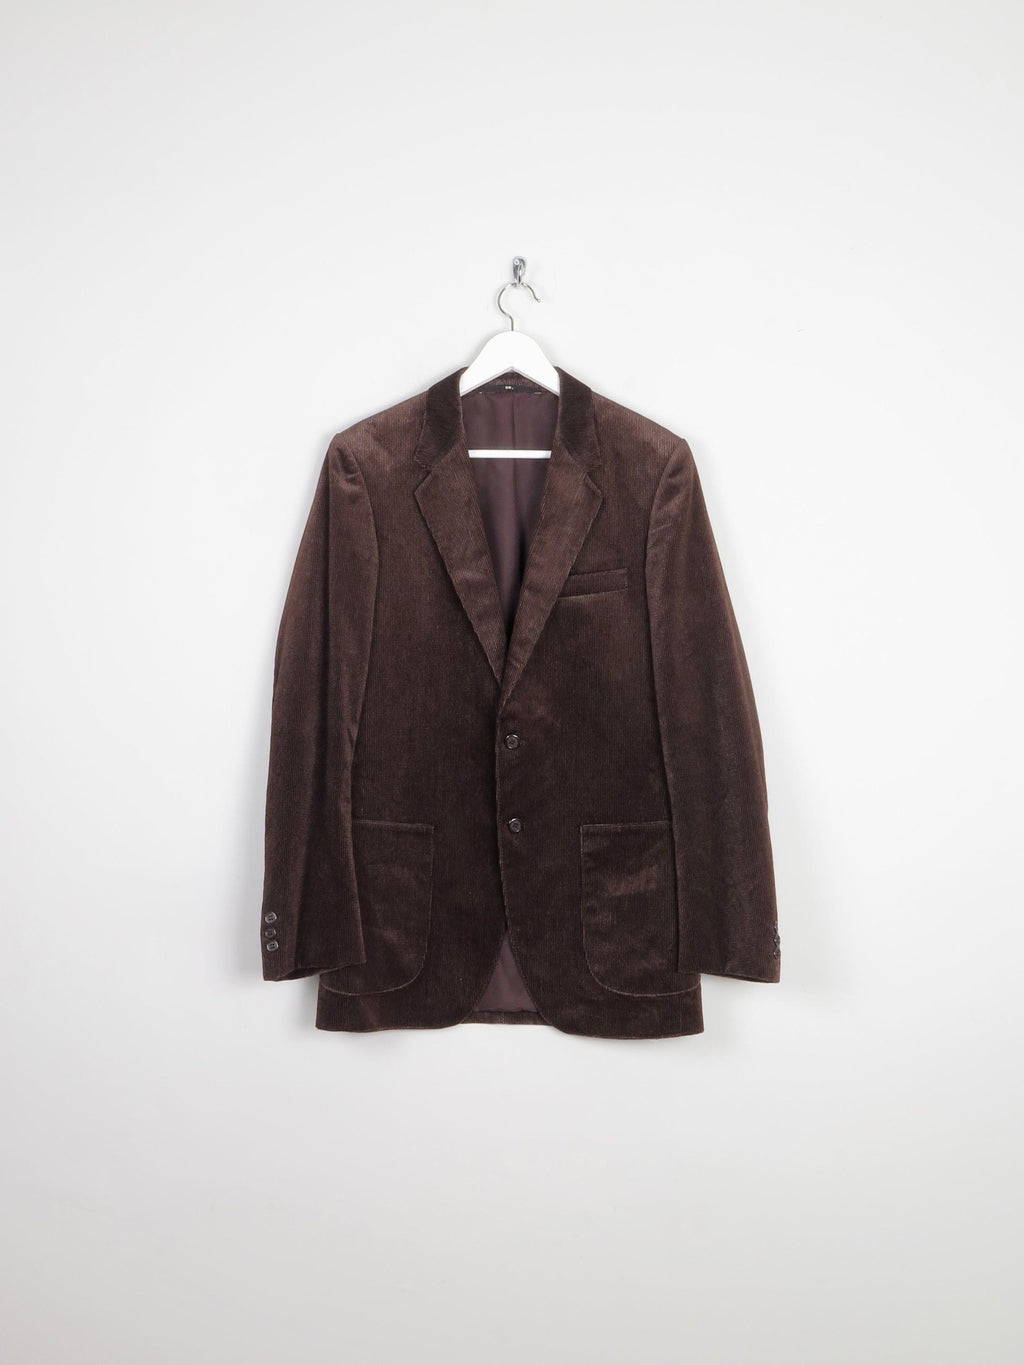 Men's Brown Velvet Pinstripe 1970s Tailored Jacket 40" S/M - The Harlequin